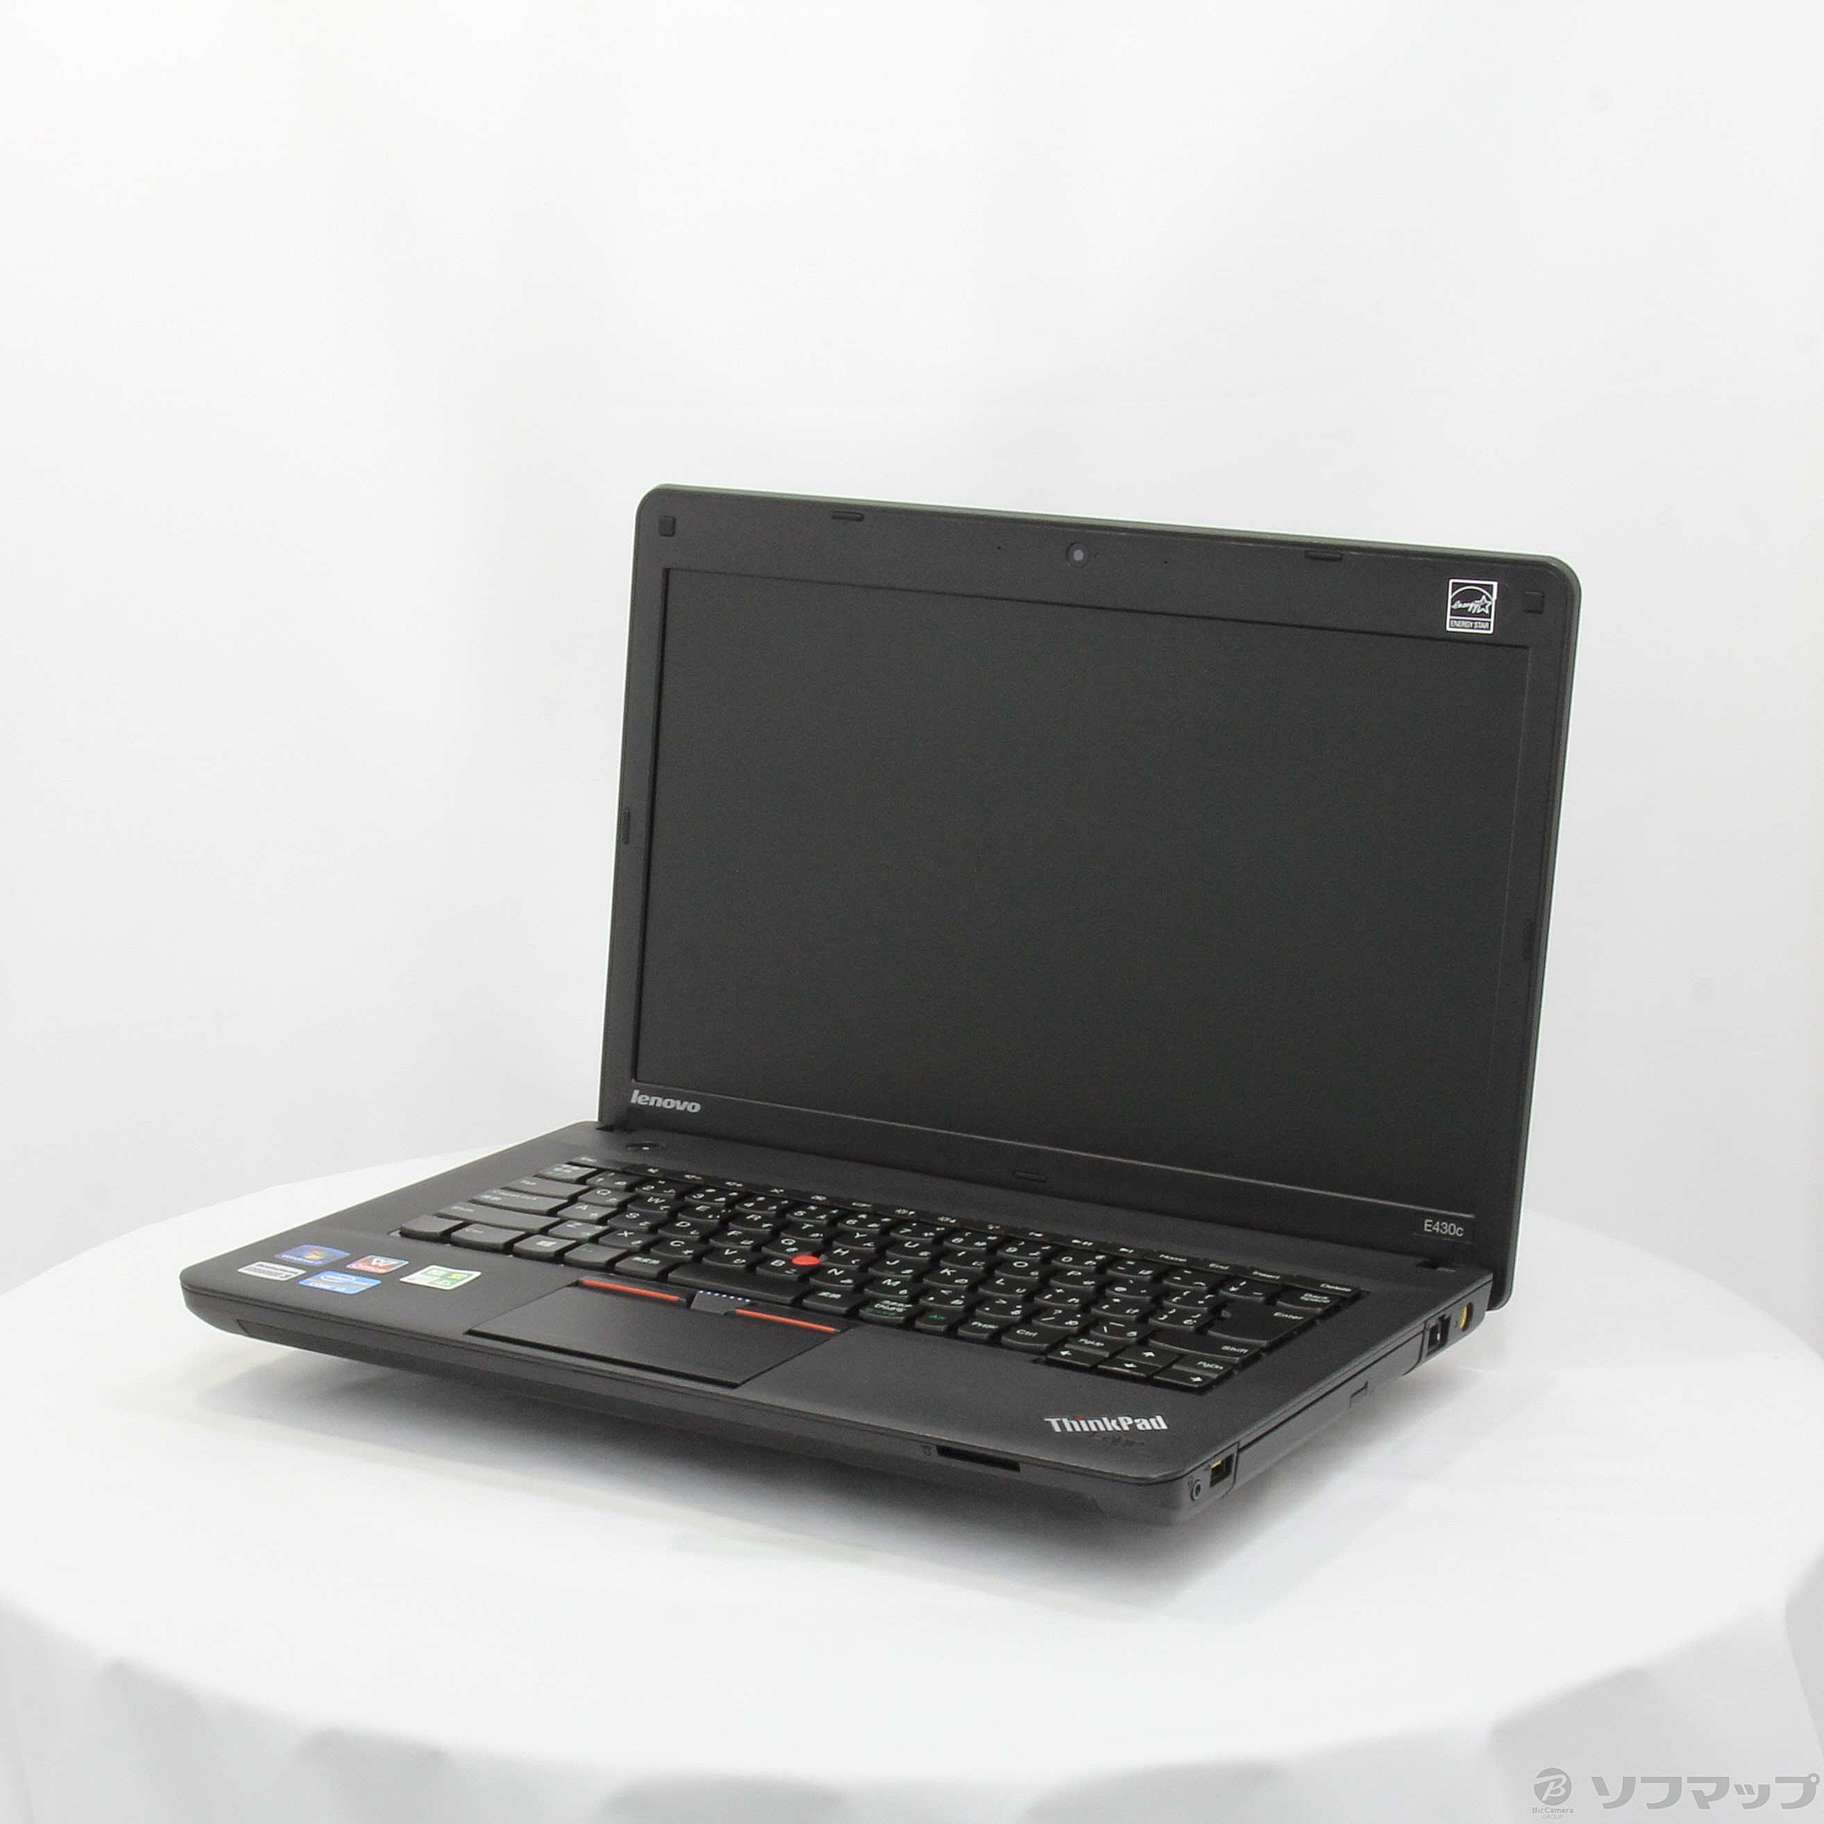 セール対象品 格安安心パソコン ThinkPad Edge E430c 33651F9 ※バッテリー完全消耗